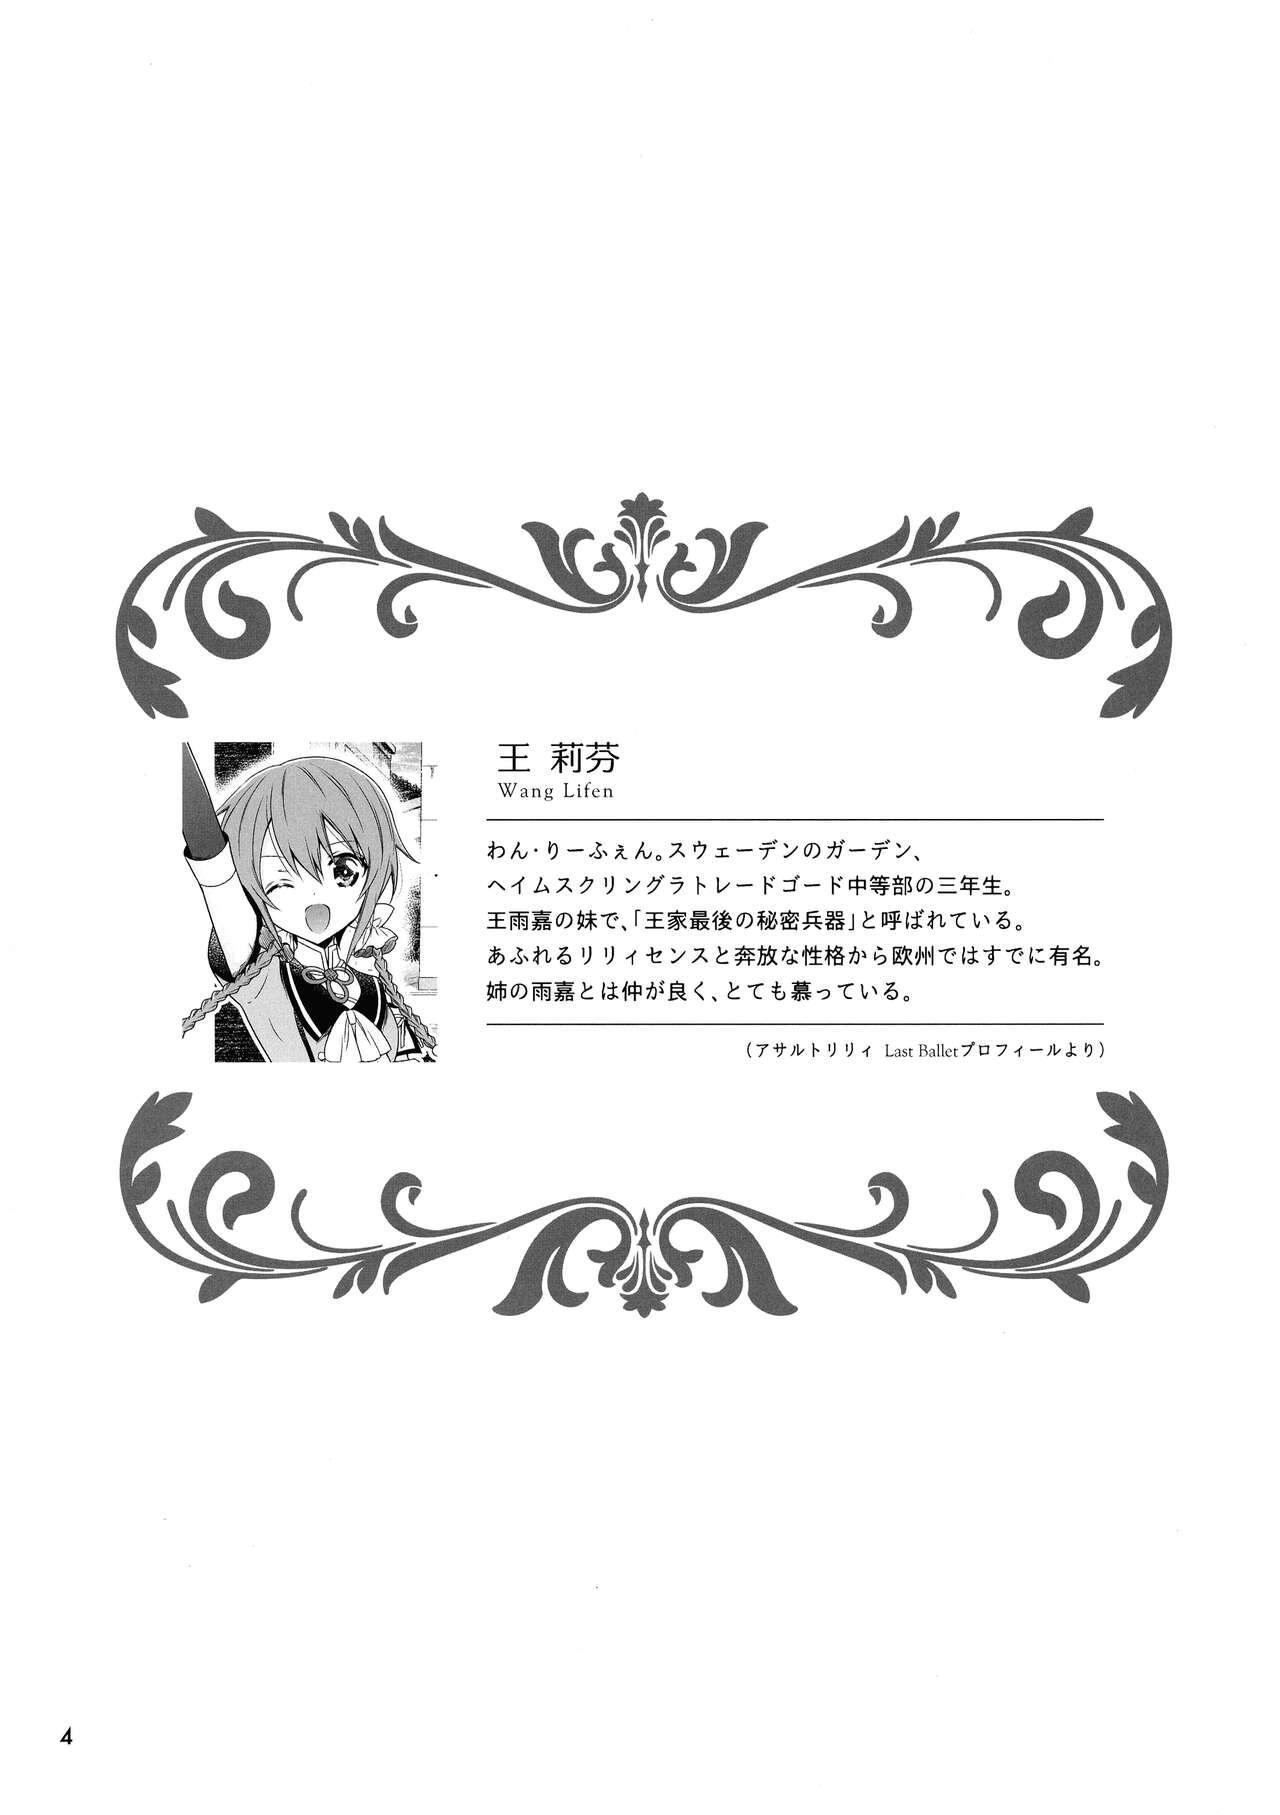 Loira Kami Rin ga ame Yoshimi ni Yaki Mochi o Yaku Hanashi - Assault lily Facebook - Page 4